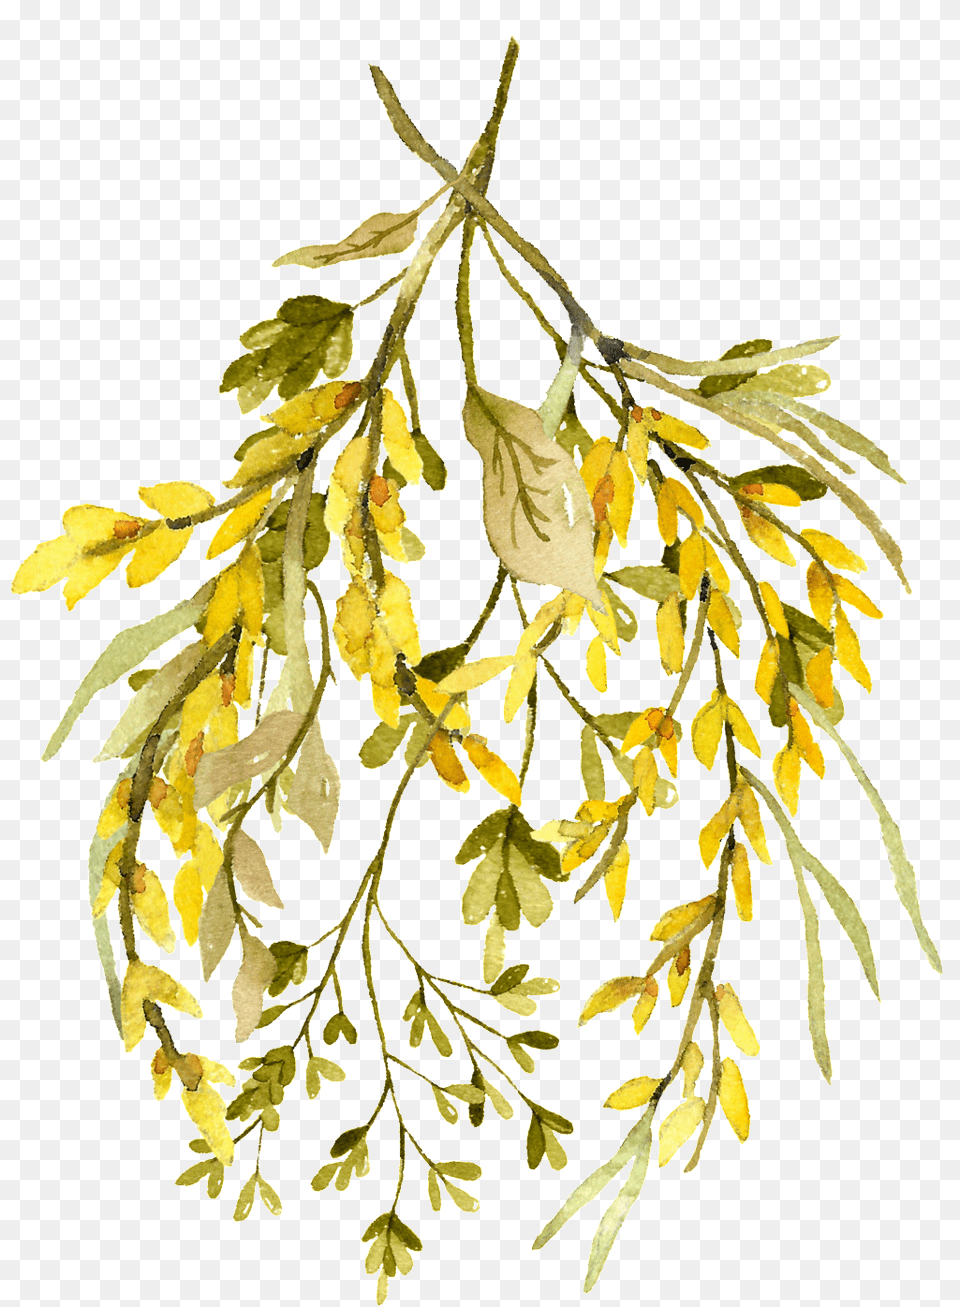 Download Hd Watercolor Leaf Rustikaler Transparent Watercolor Leaves, Herbal, Herbs, Plant, Seaweed Free Png